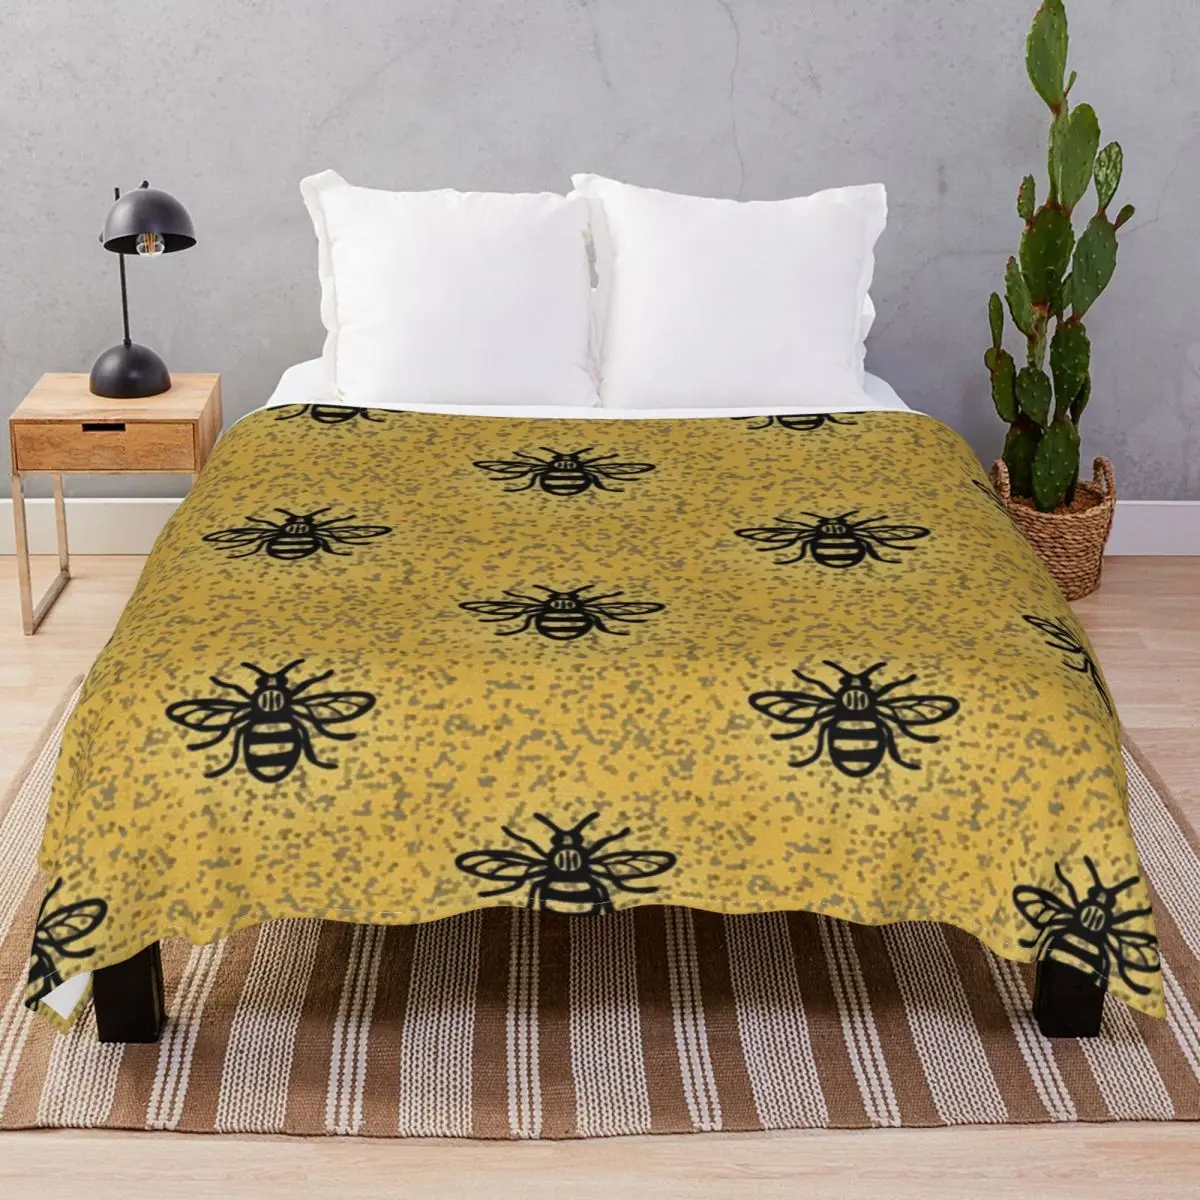 Manchester Bee Print Blankets Velvet Autumn/Winter Soft Throw Blanket for Bed Sofa Travel Office